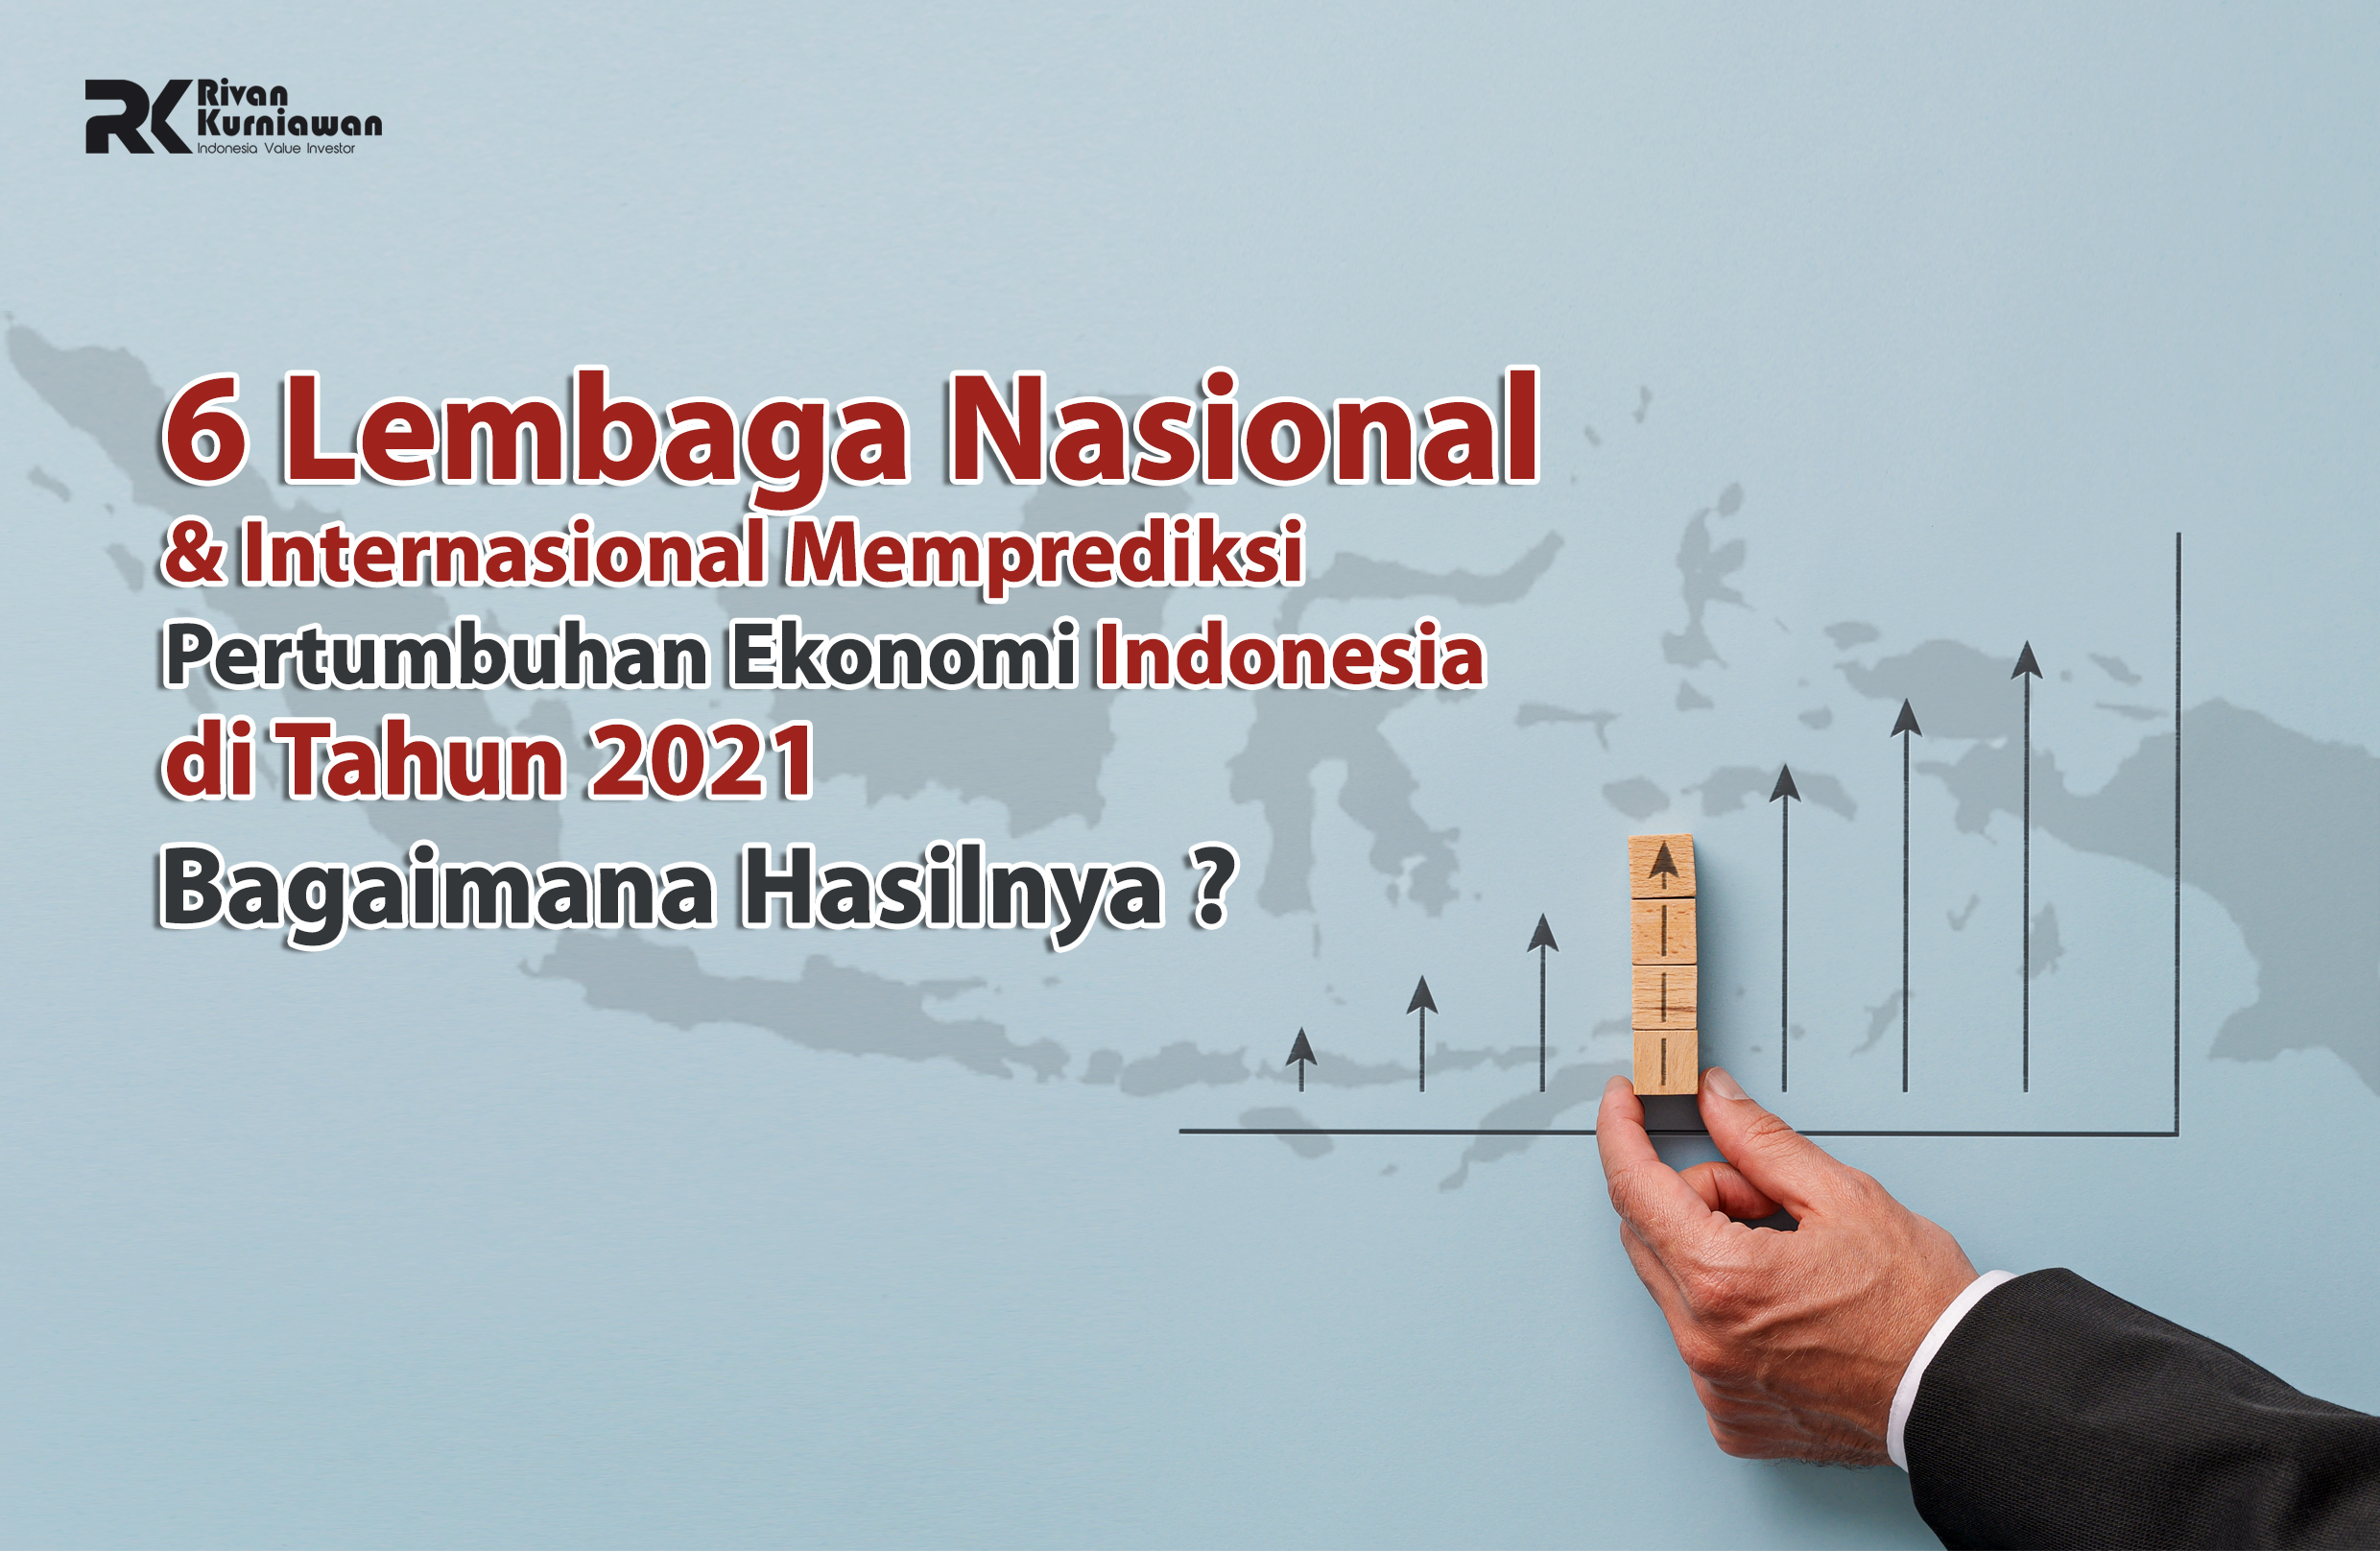 6 Lembaga Nasional dan Internasional Memprediksi Pertumbuhan Ekonomi Indonesia di Tahun 2021, Bagaimana Hasilnya ?